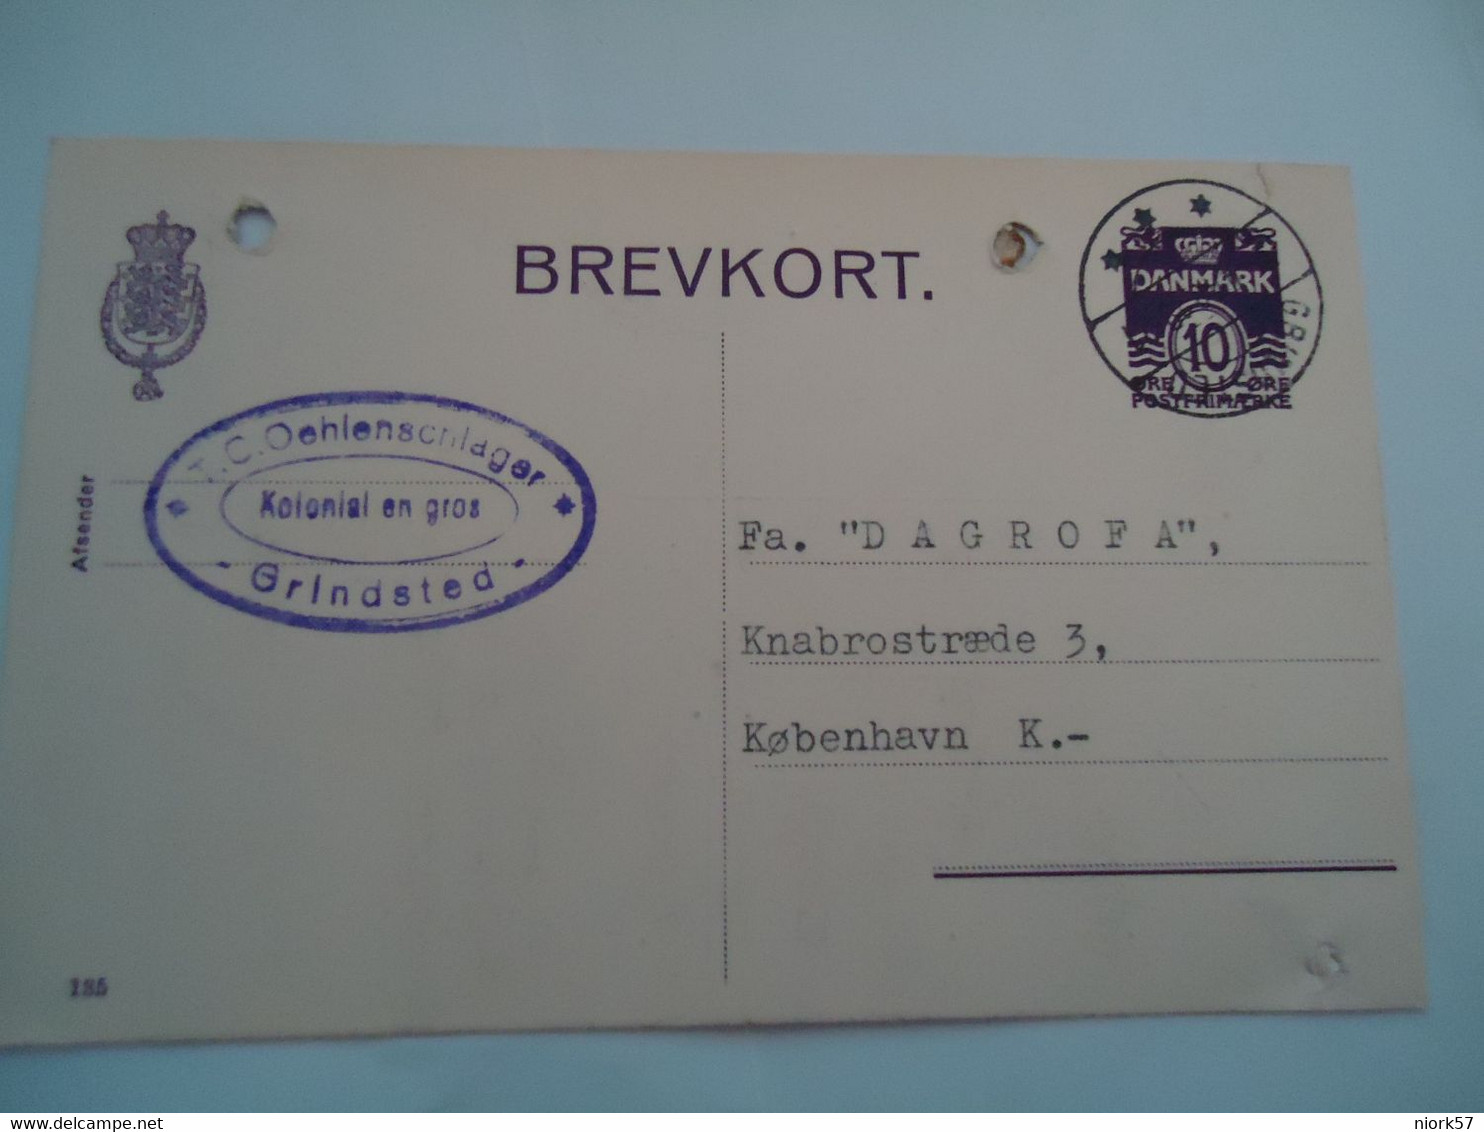 DENMARK BREVKORT  1940  GRINDSTED  2 SCAN - Maximumkaarten